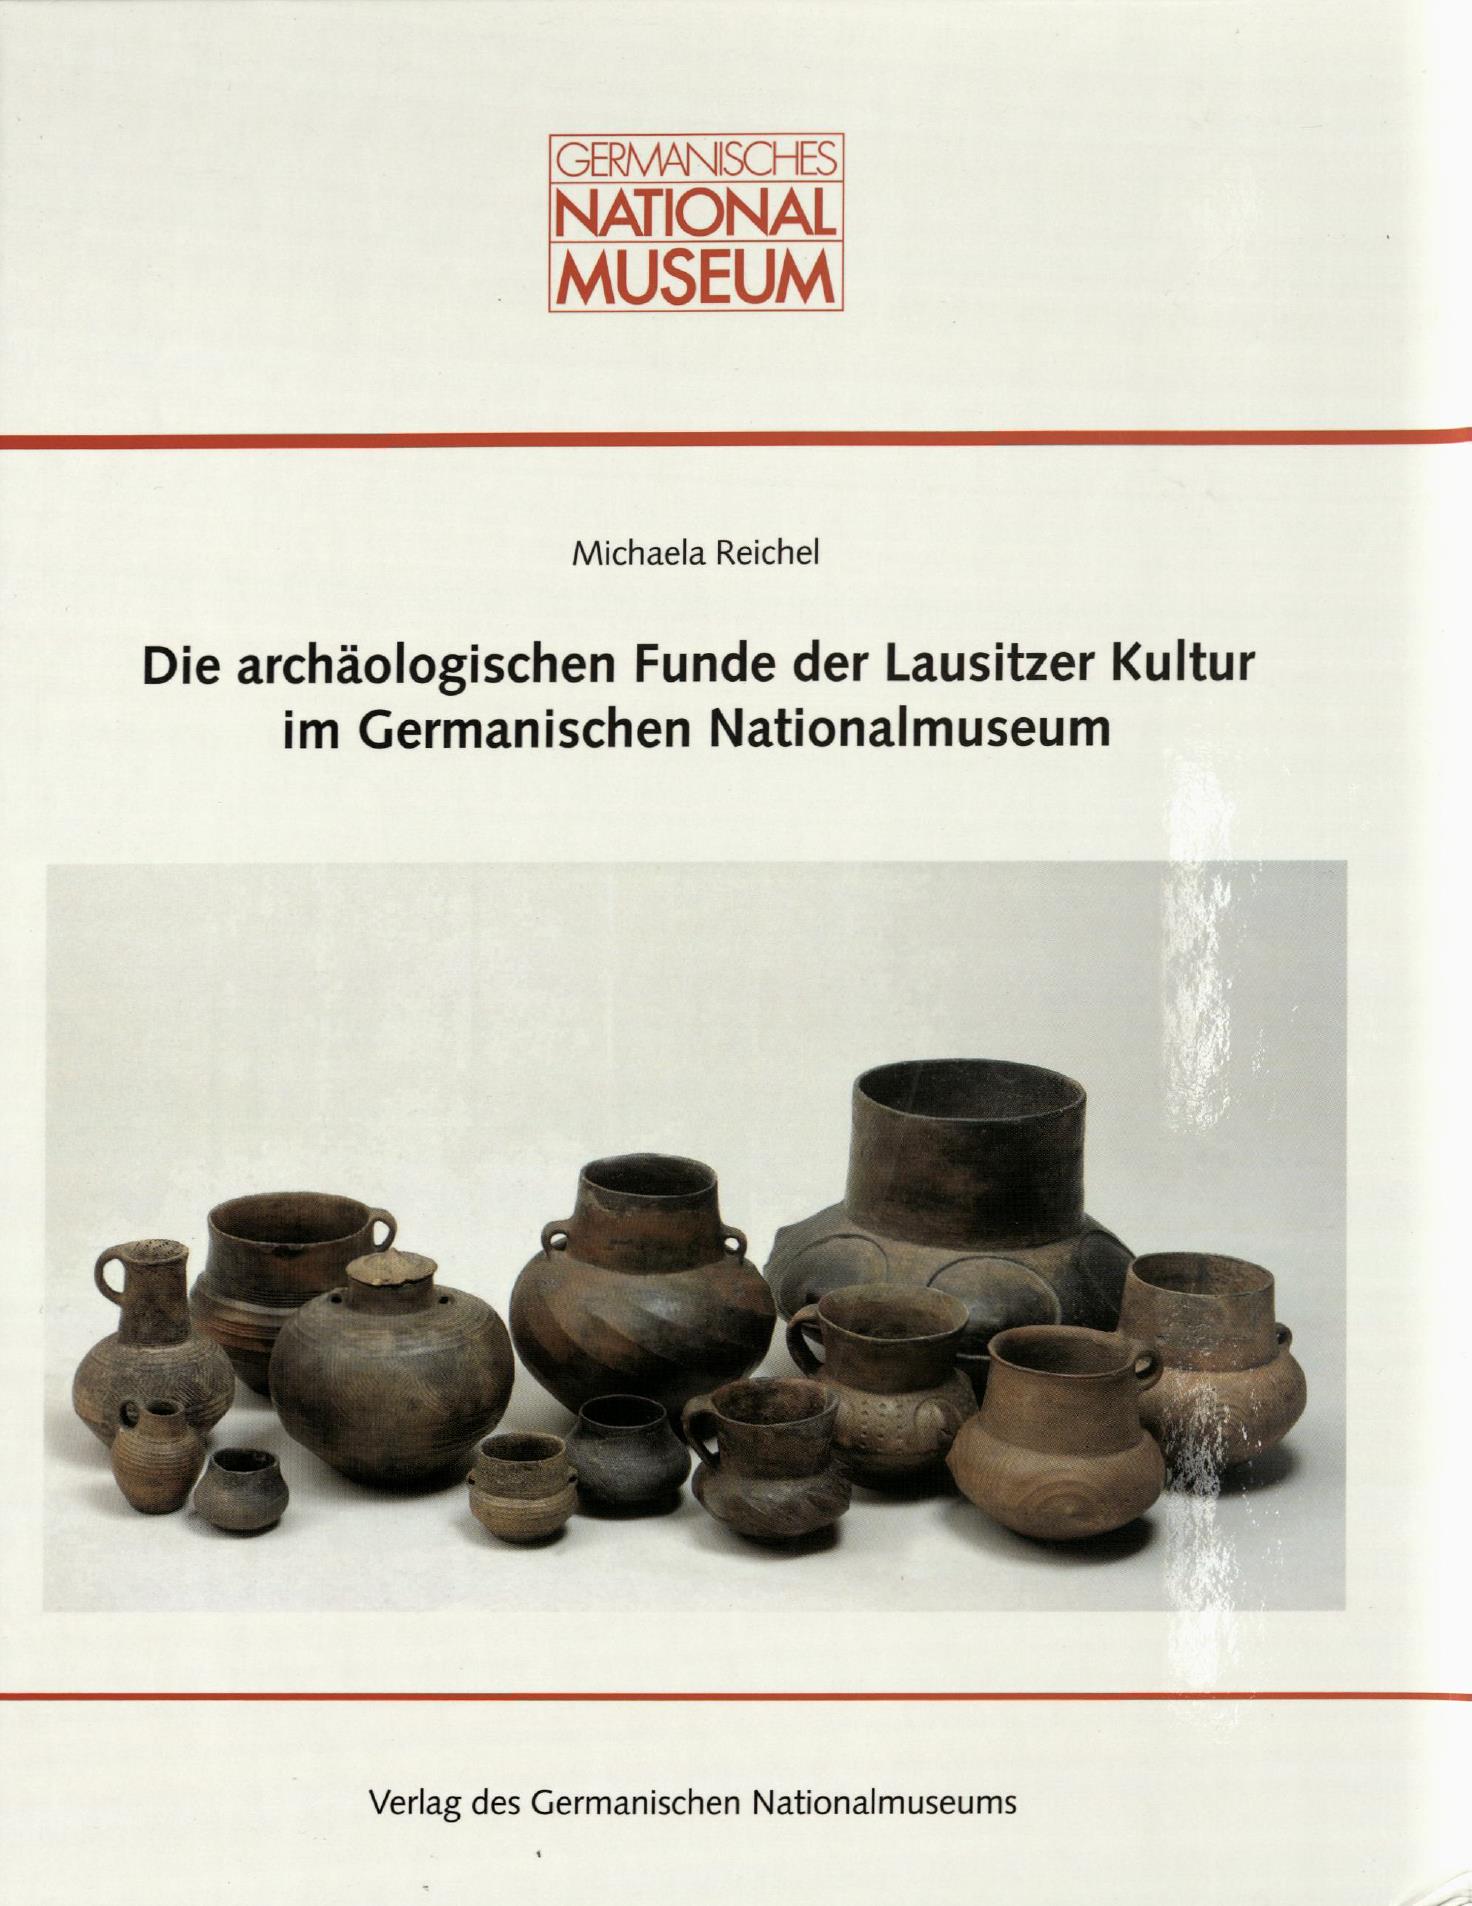 Die archäologischen Funde der Lausitzer Kultur im Germanischen Nationalmuseum